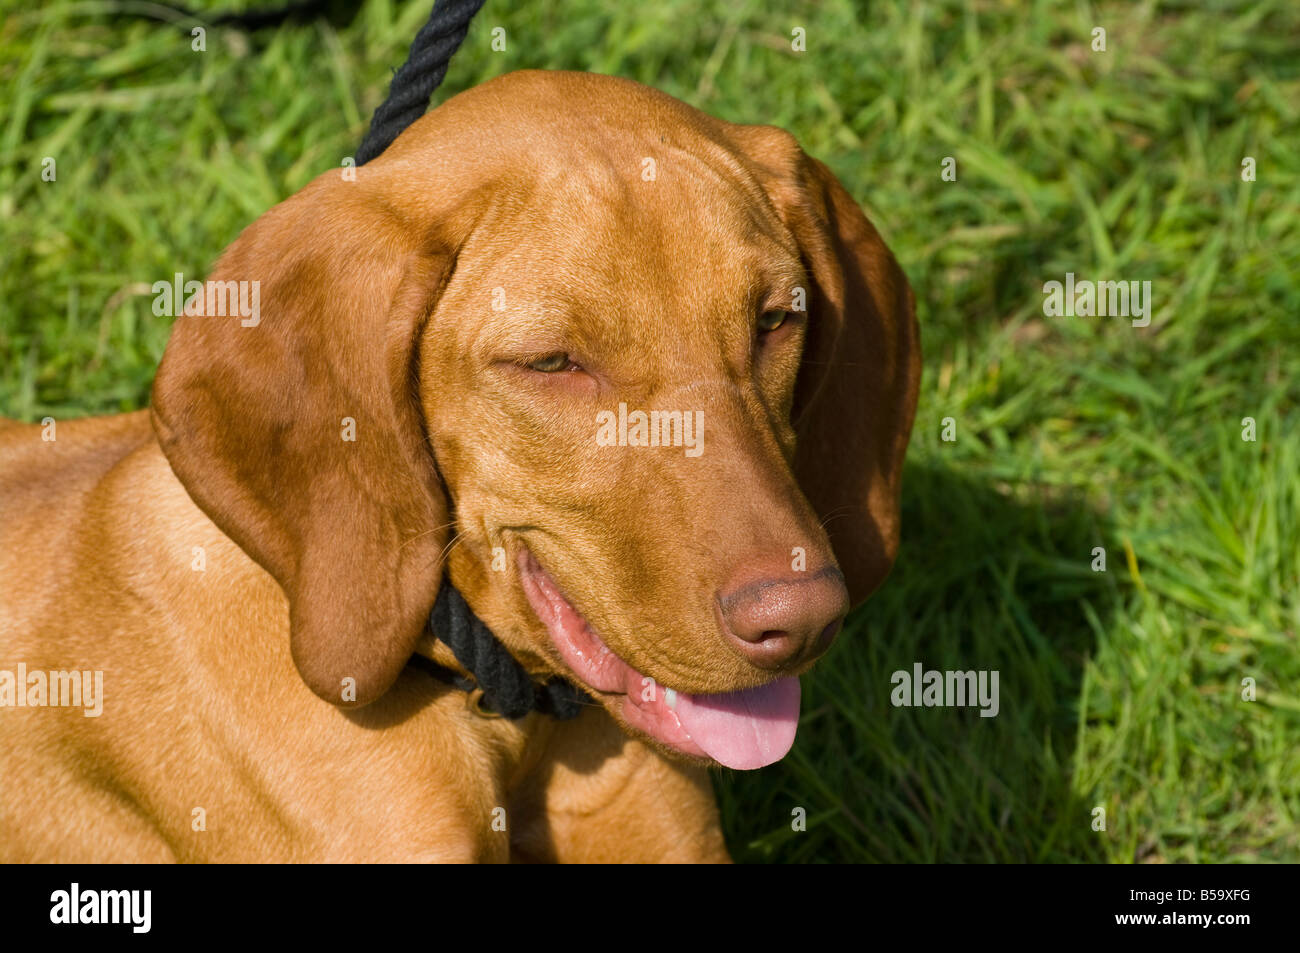 Brown perro jadeando con su lengua fuera Foto de stock